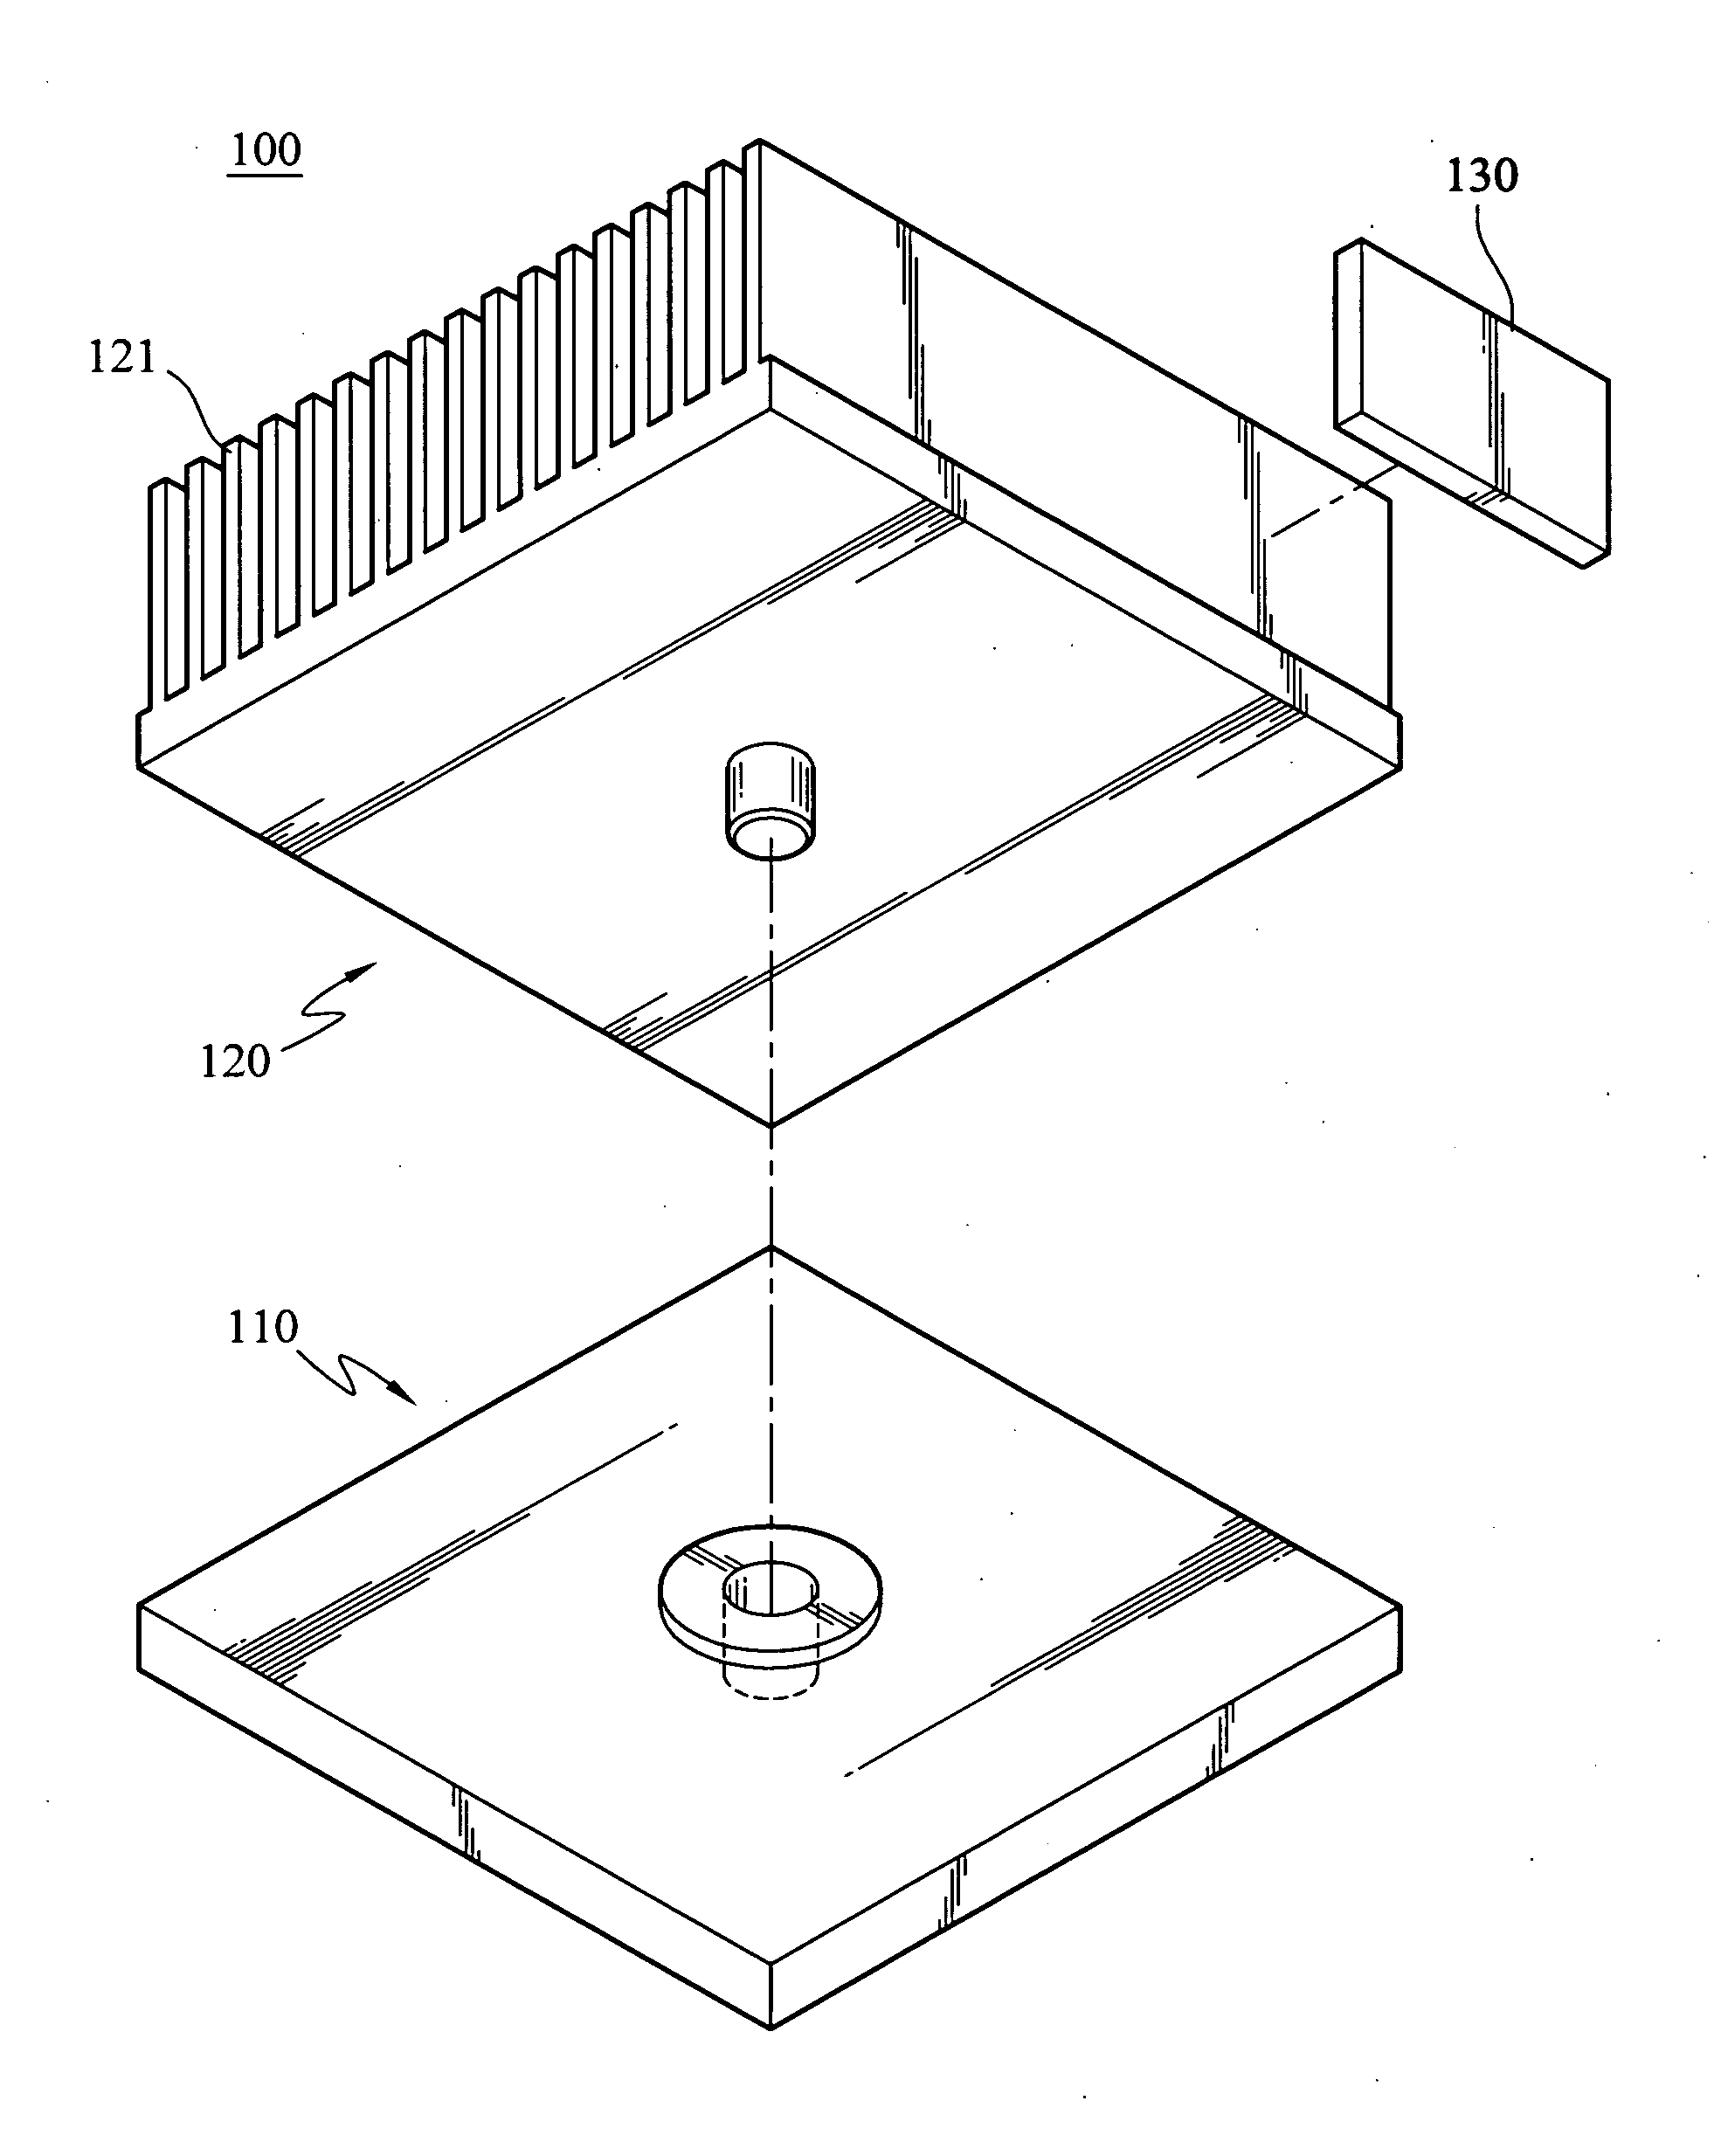 Heat sink structure